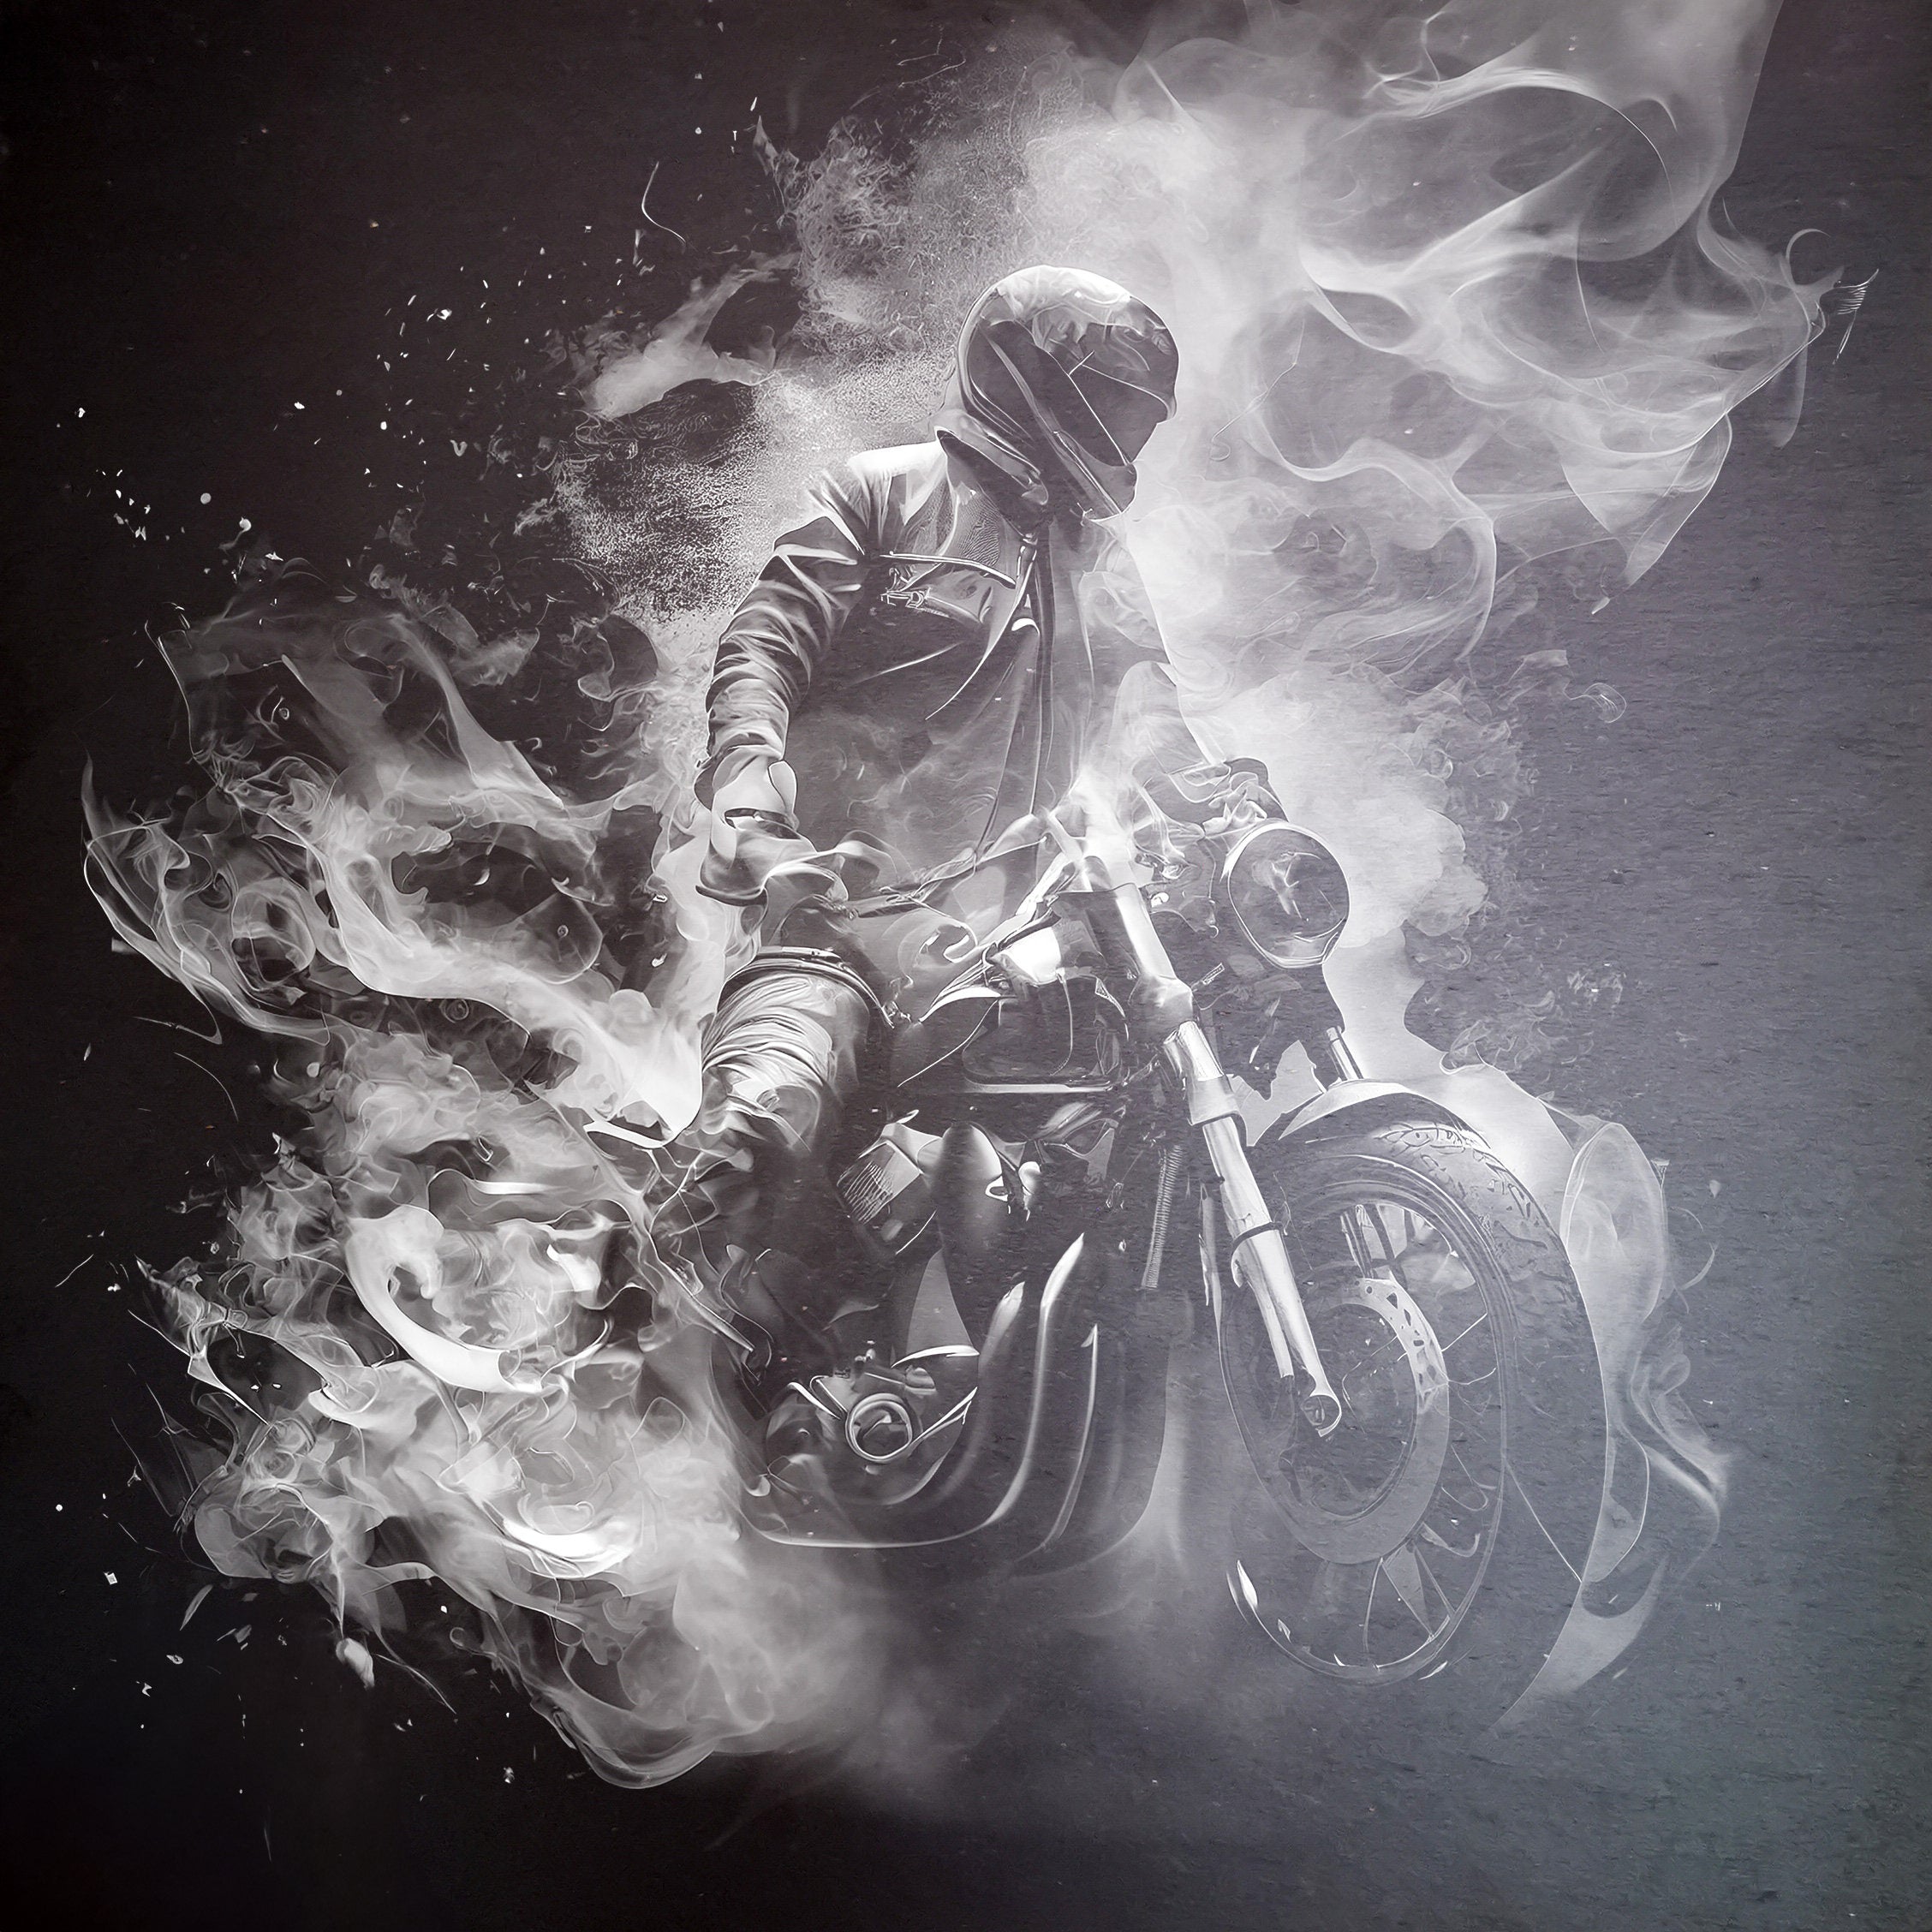 Slate - Motorcyclist among the smoke